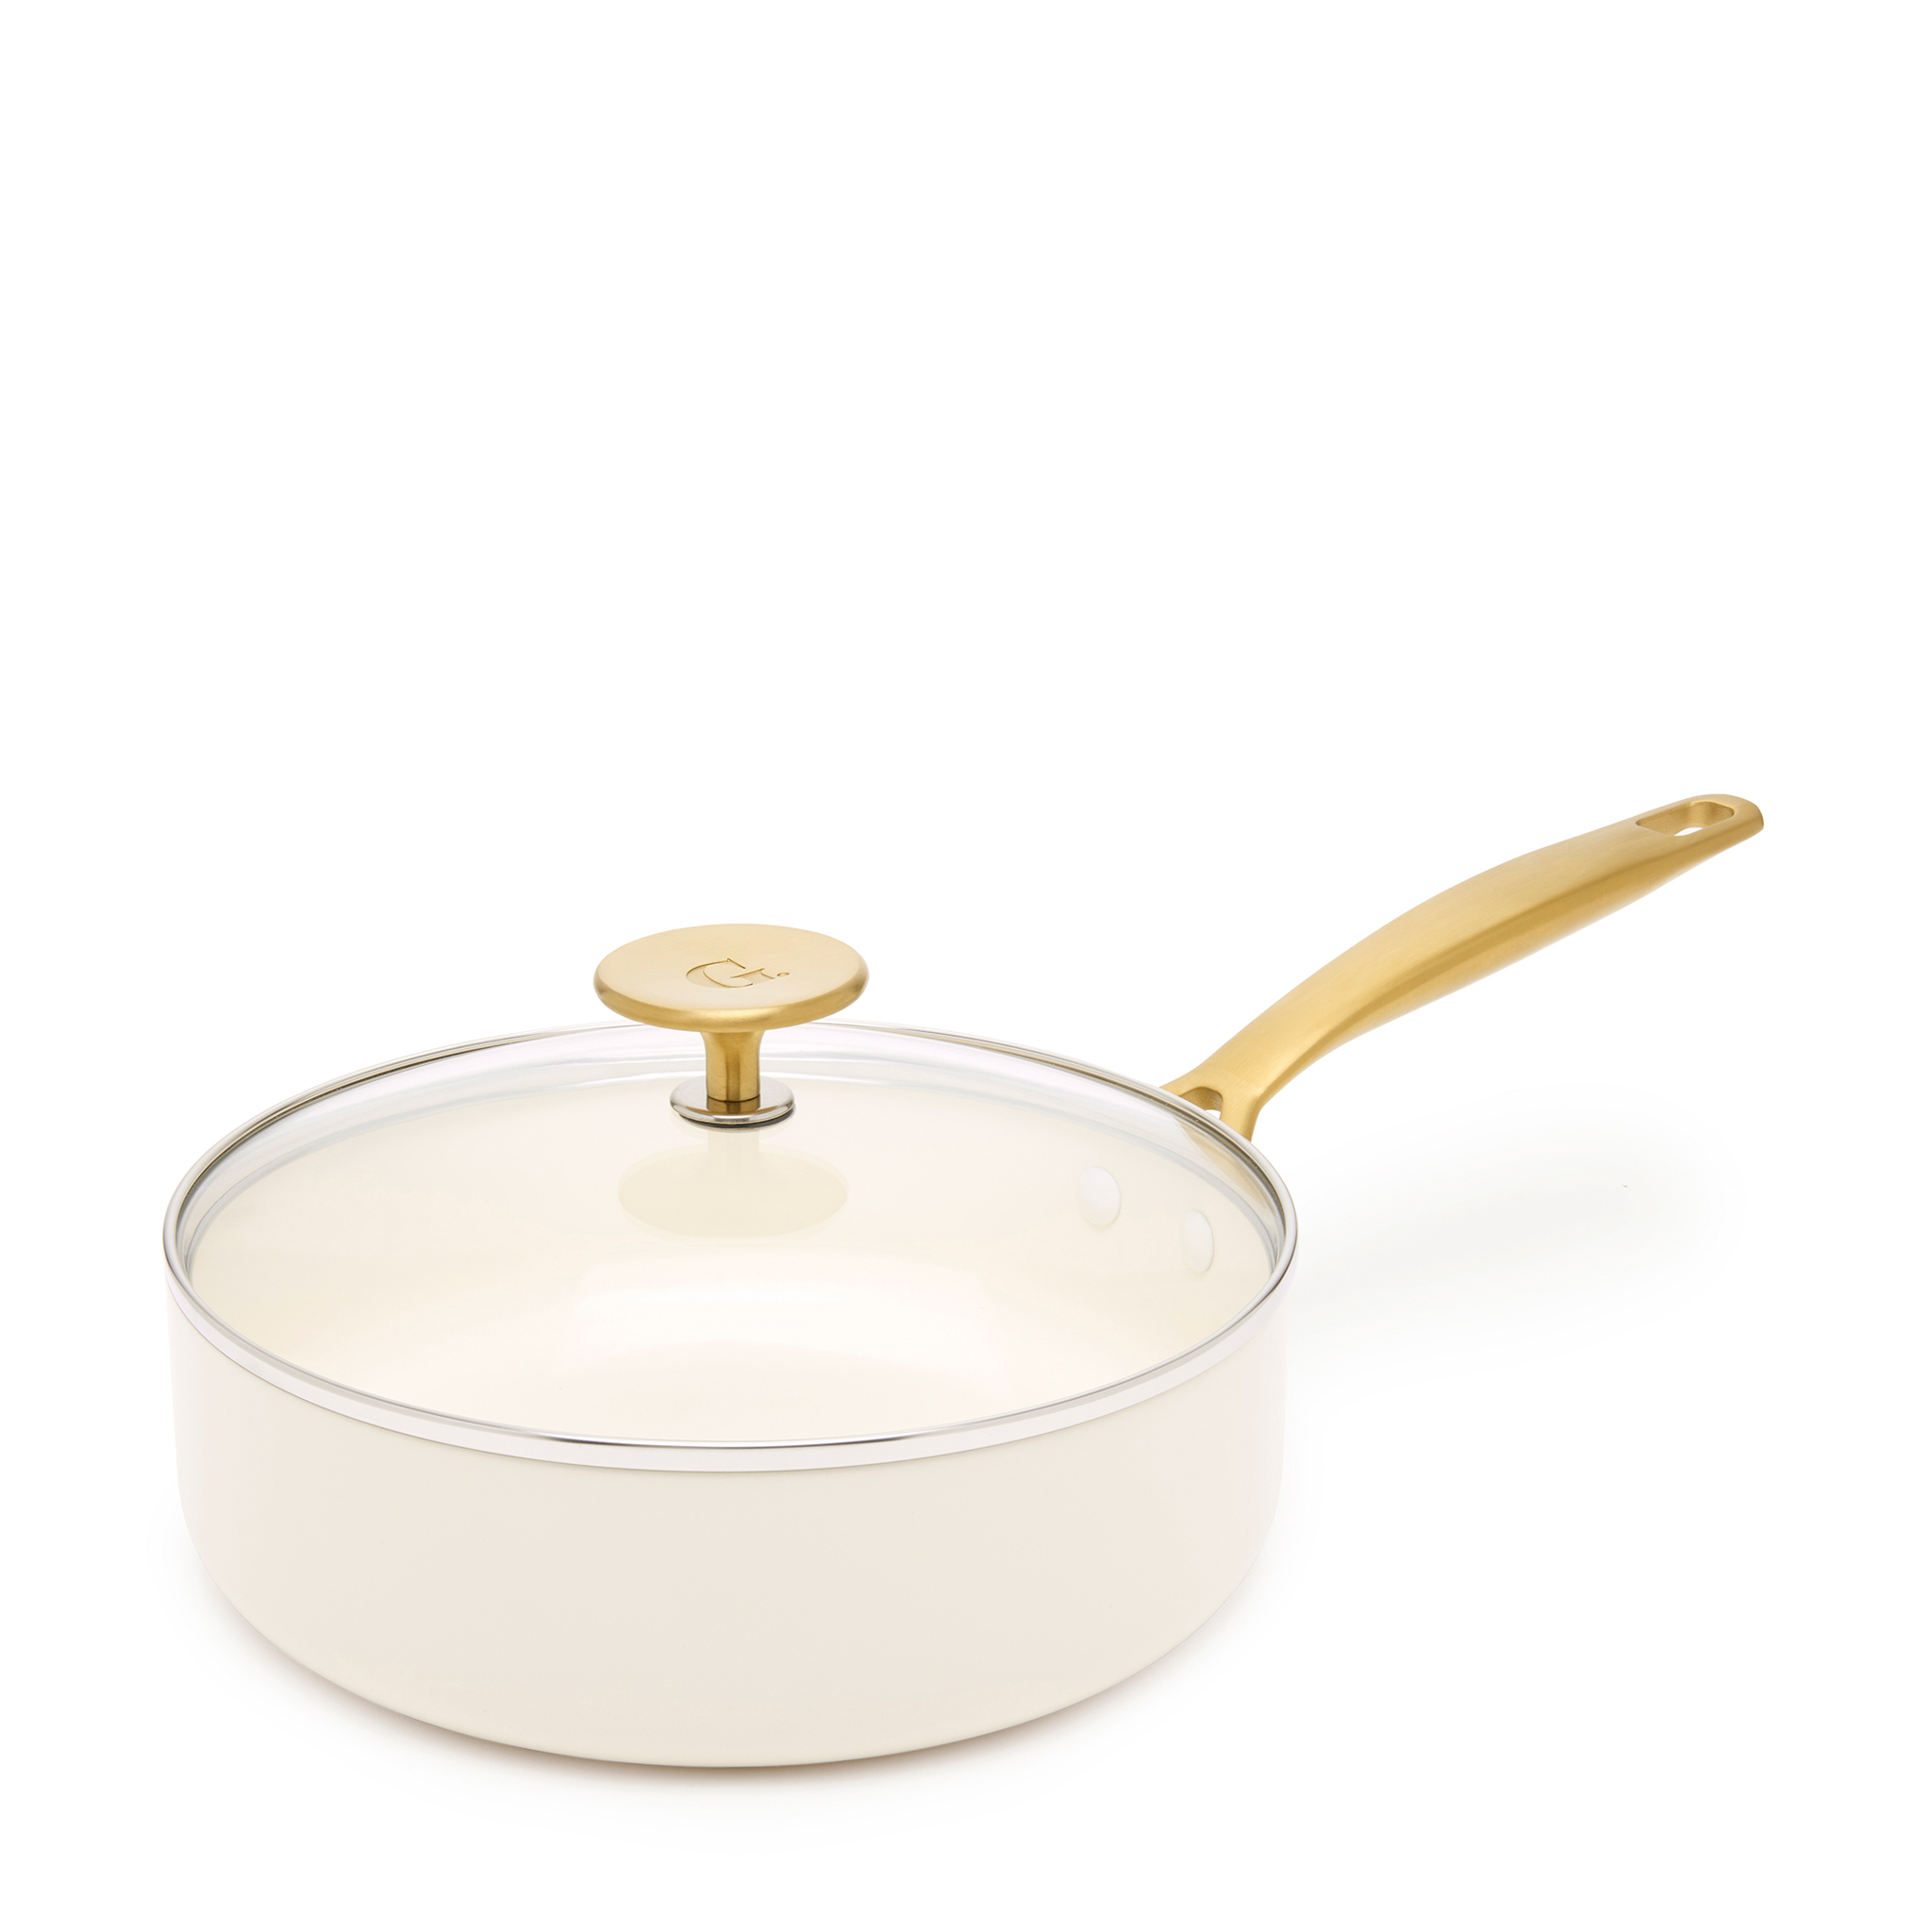 Saute pan on white background